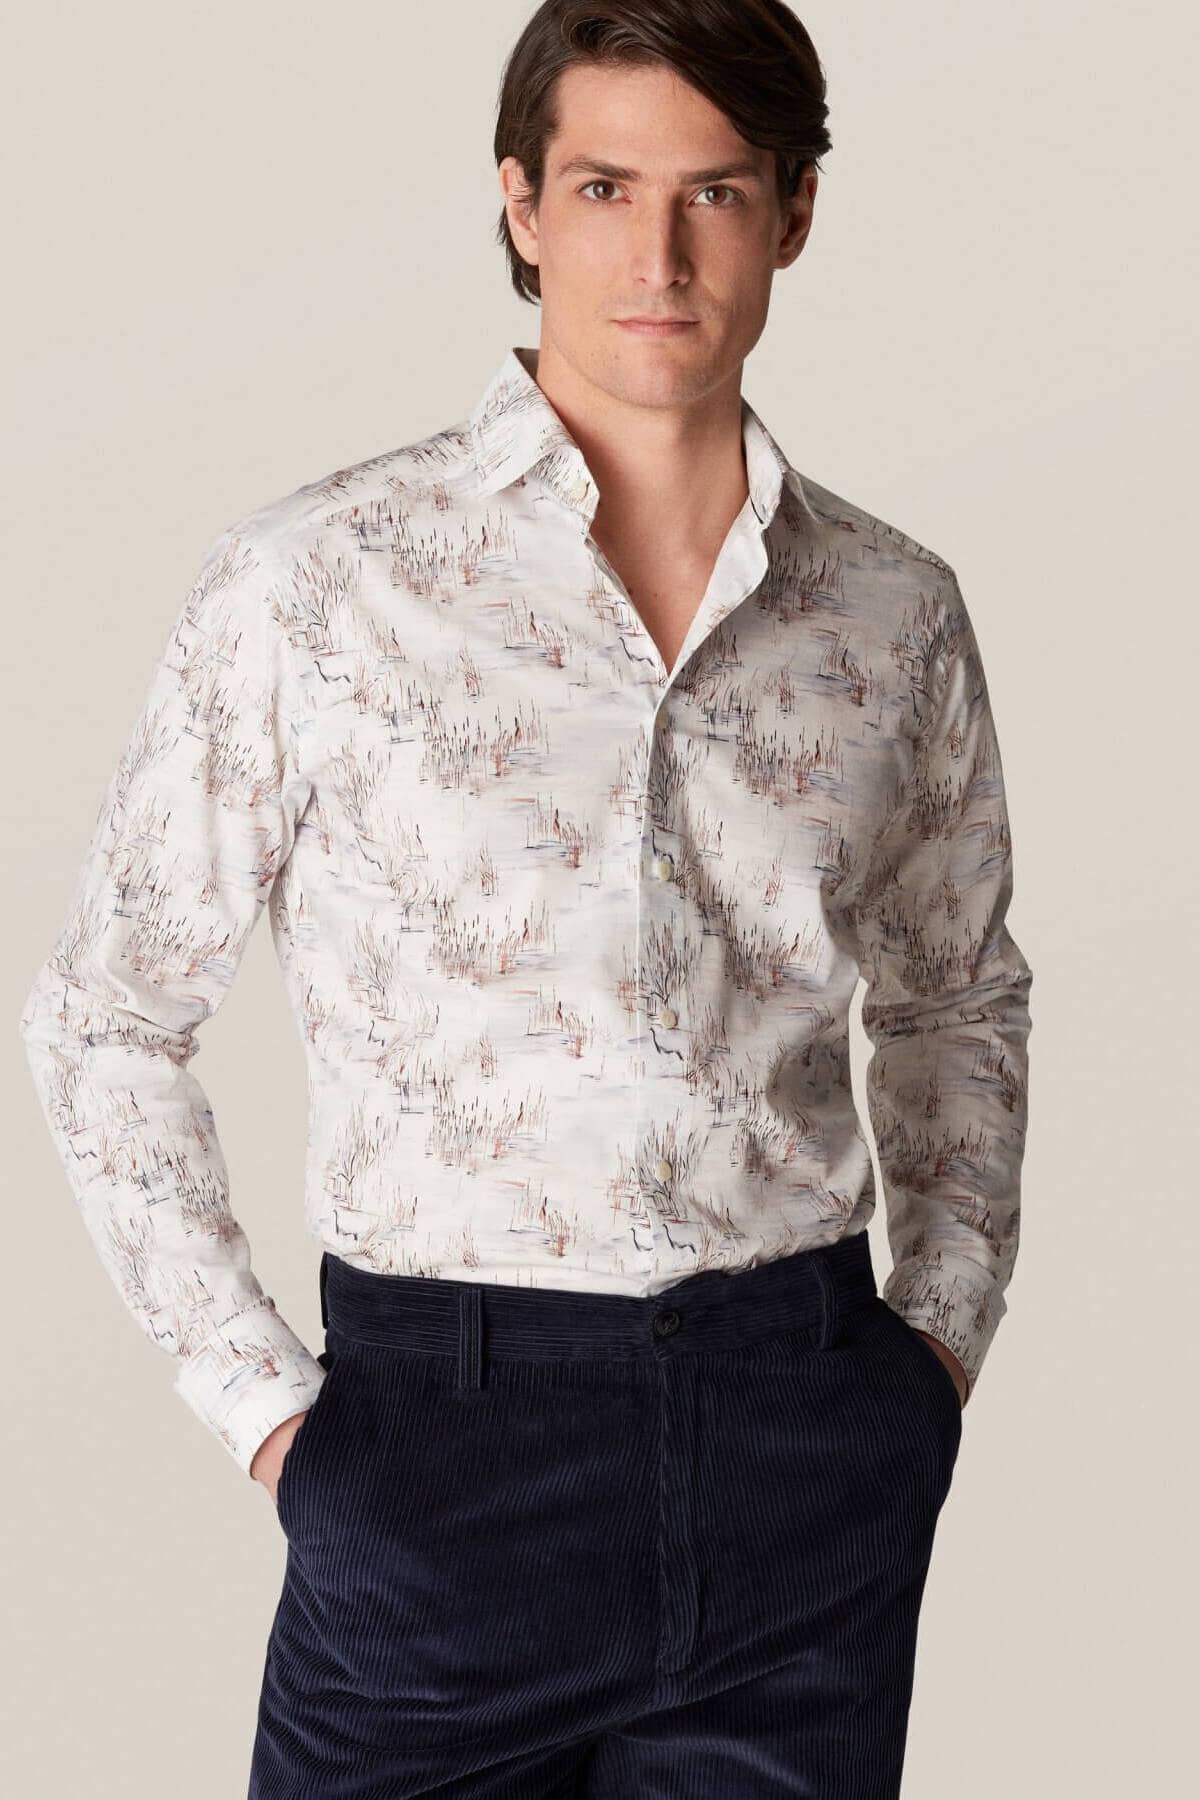 Chemise à imprimé artistique Homme - Chemise - Chemise habillée Eton